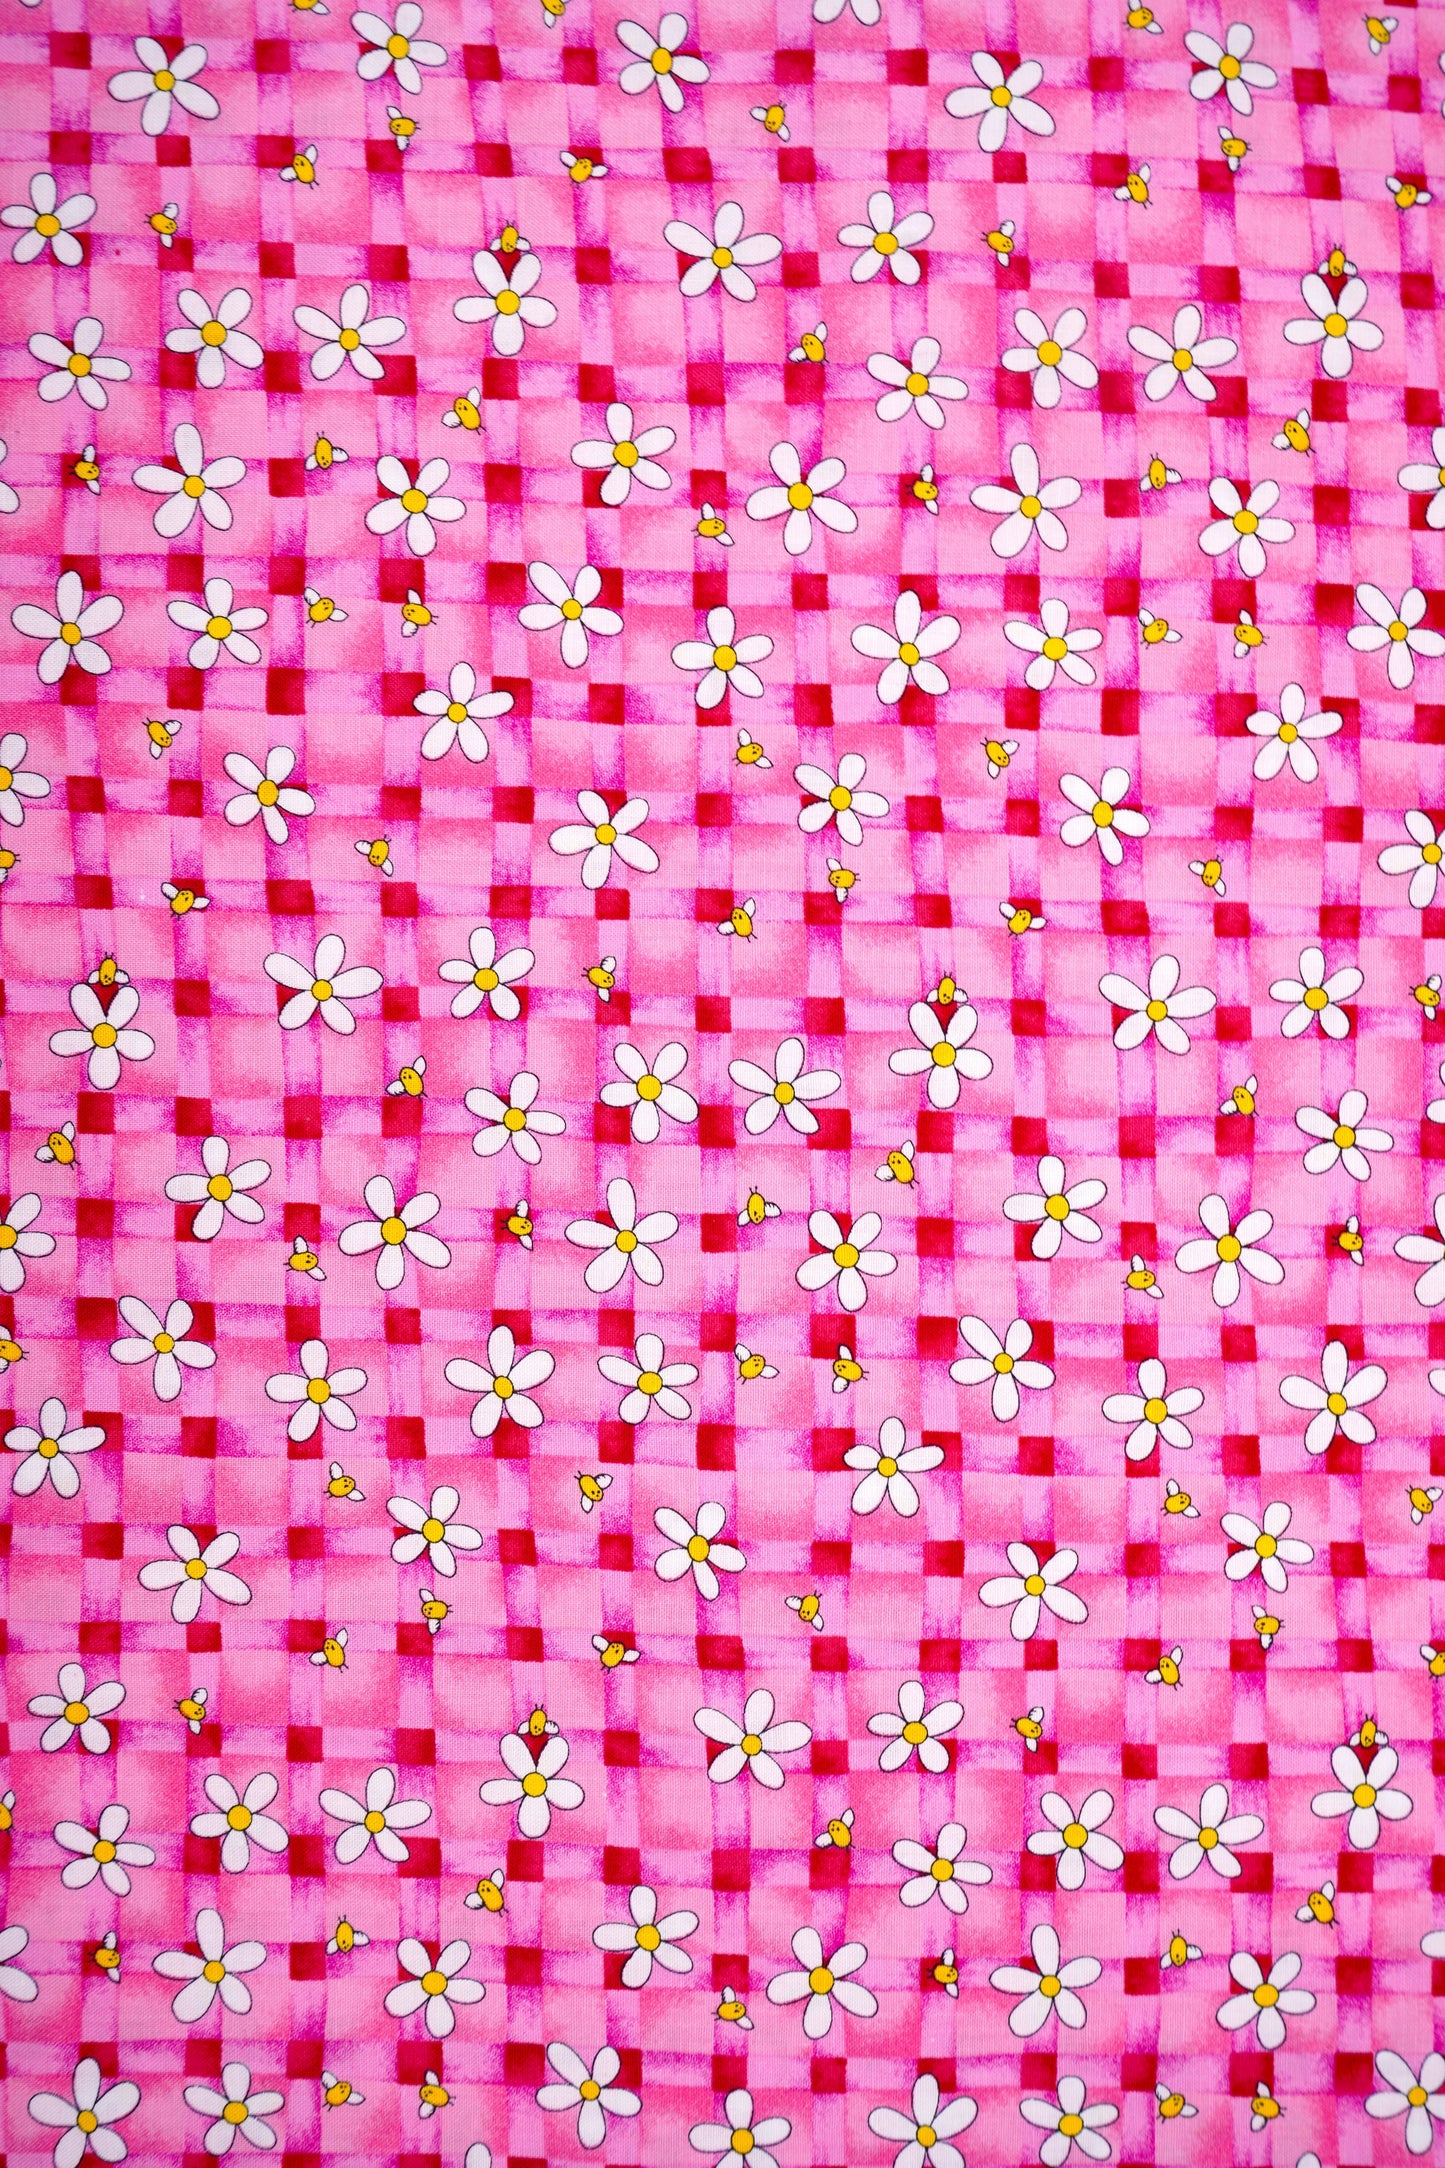 Baumwolle mit Blumen in 3 versch. Farben